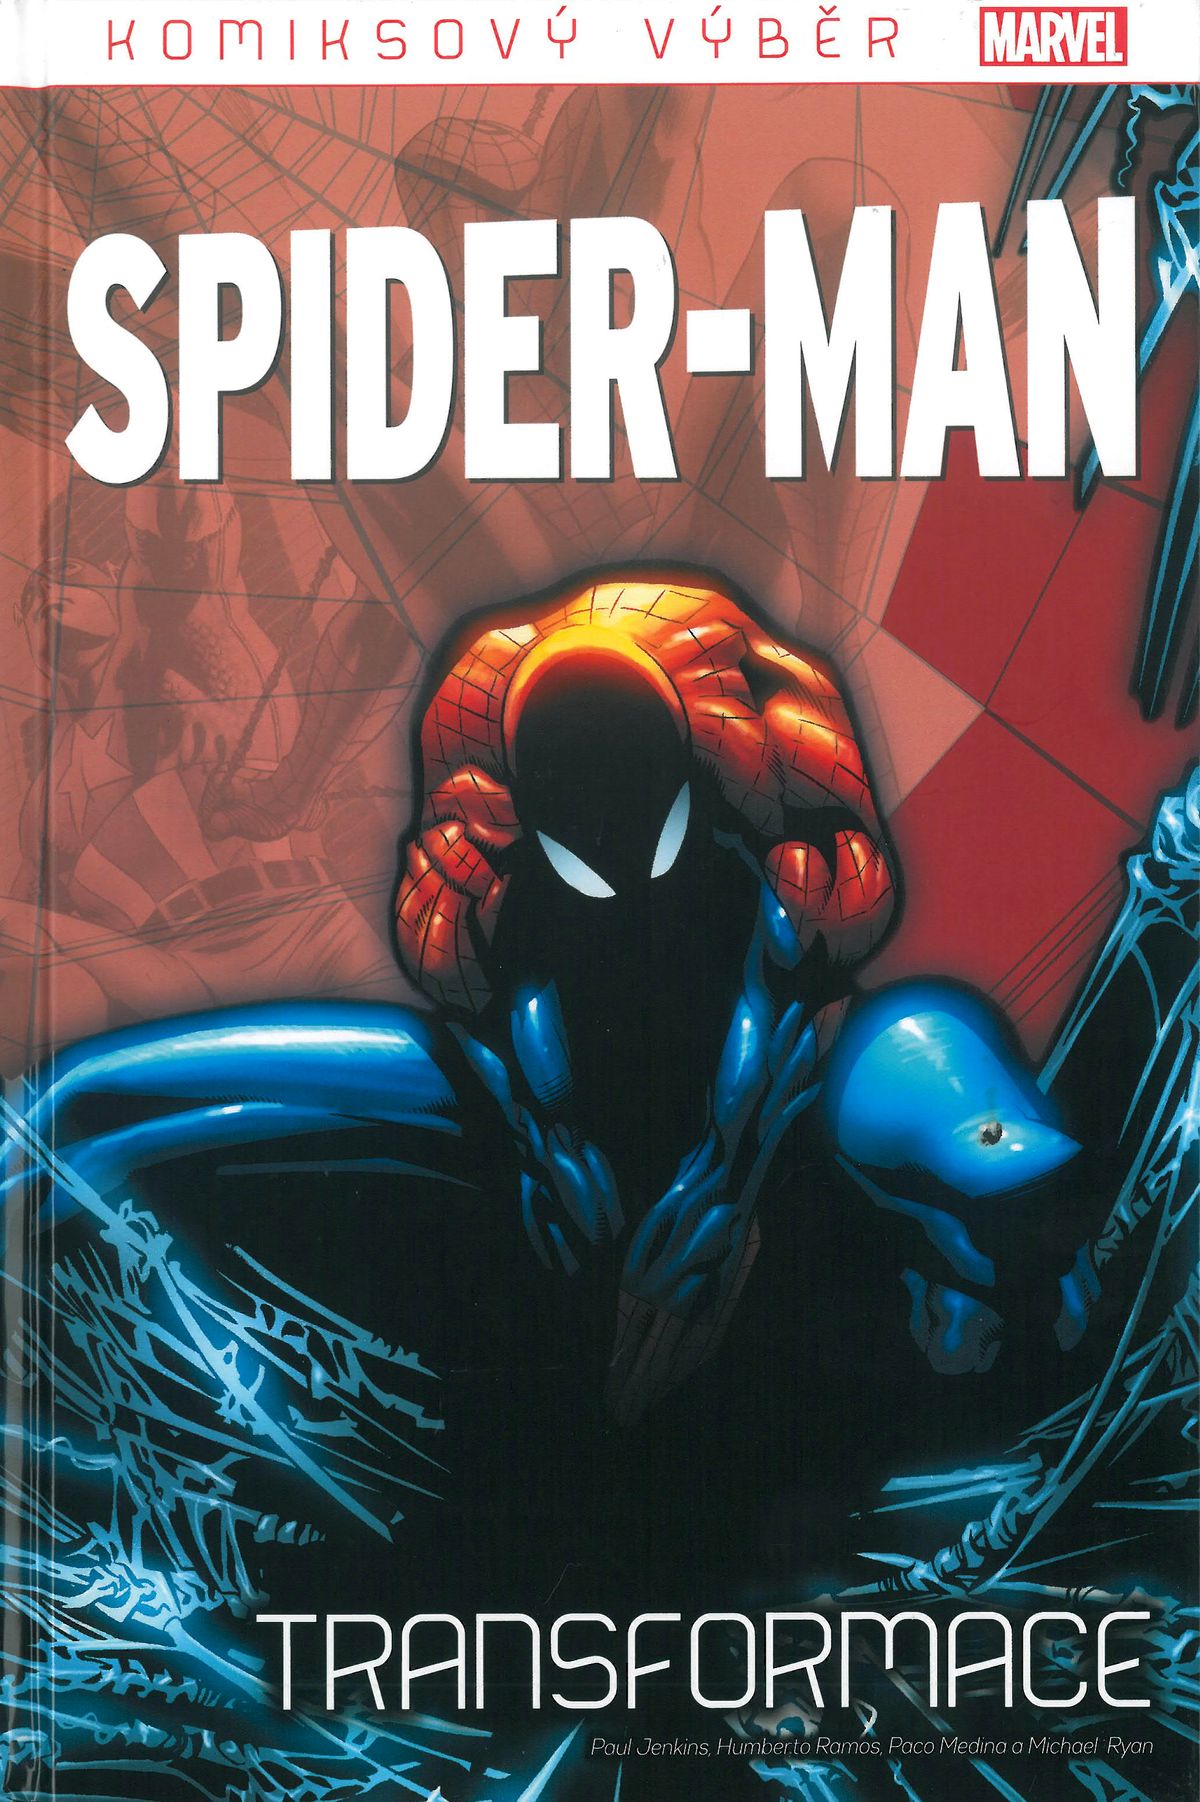 KV Spider-Man 056: Transformace